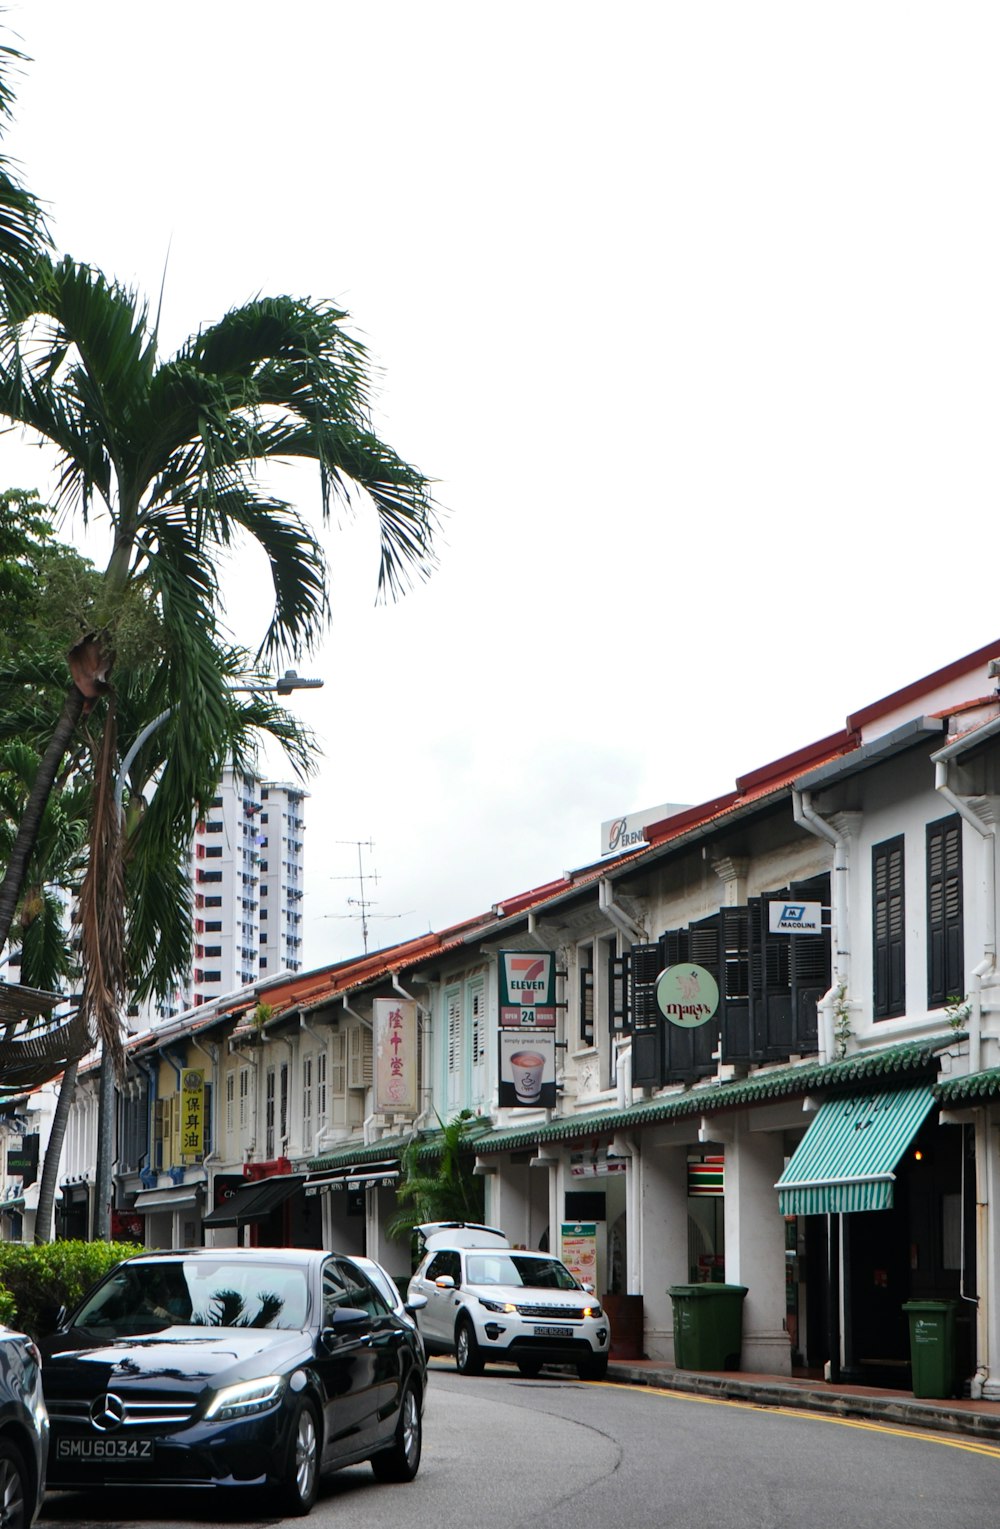 edificio in calcestruzzo verde e bianco vicino alle palme durante il giorno